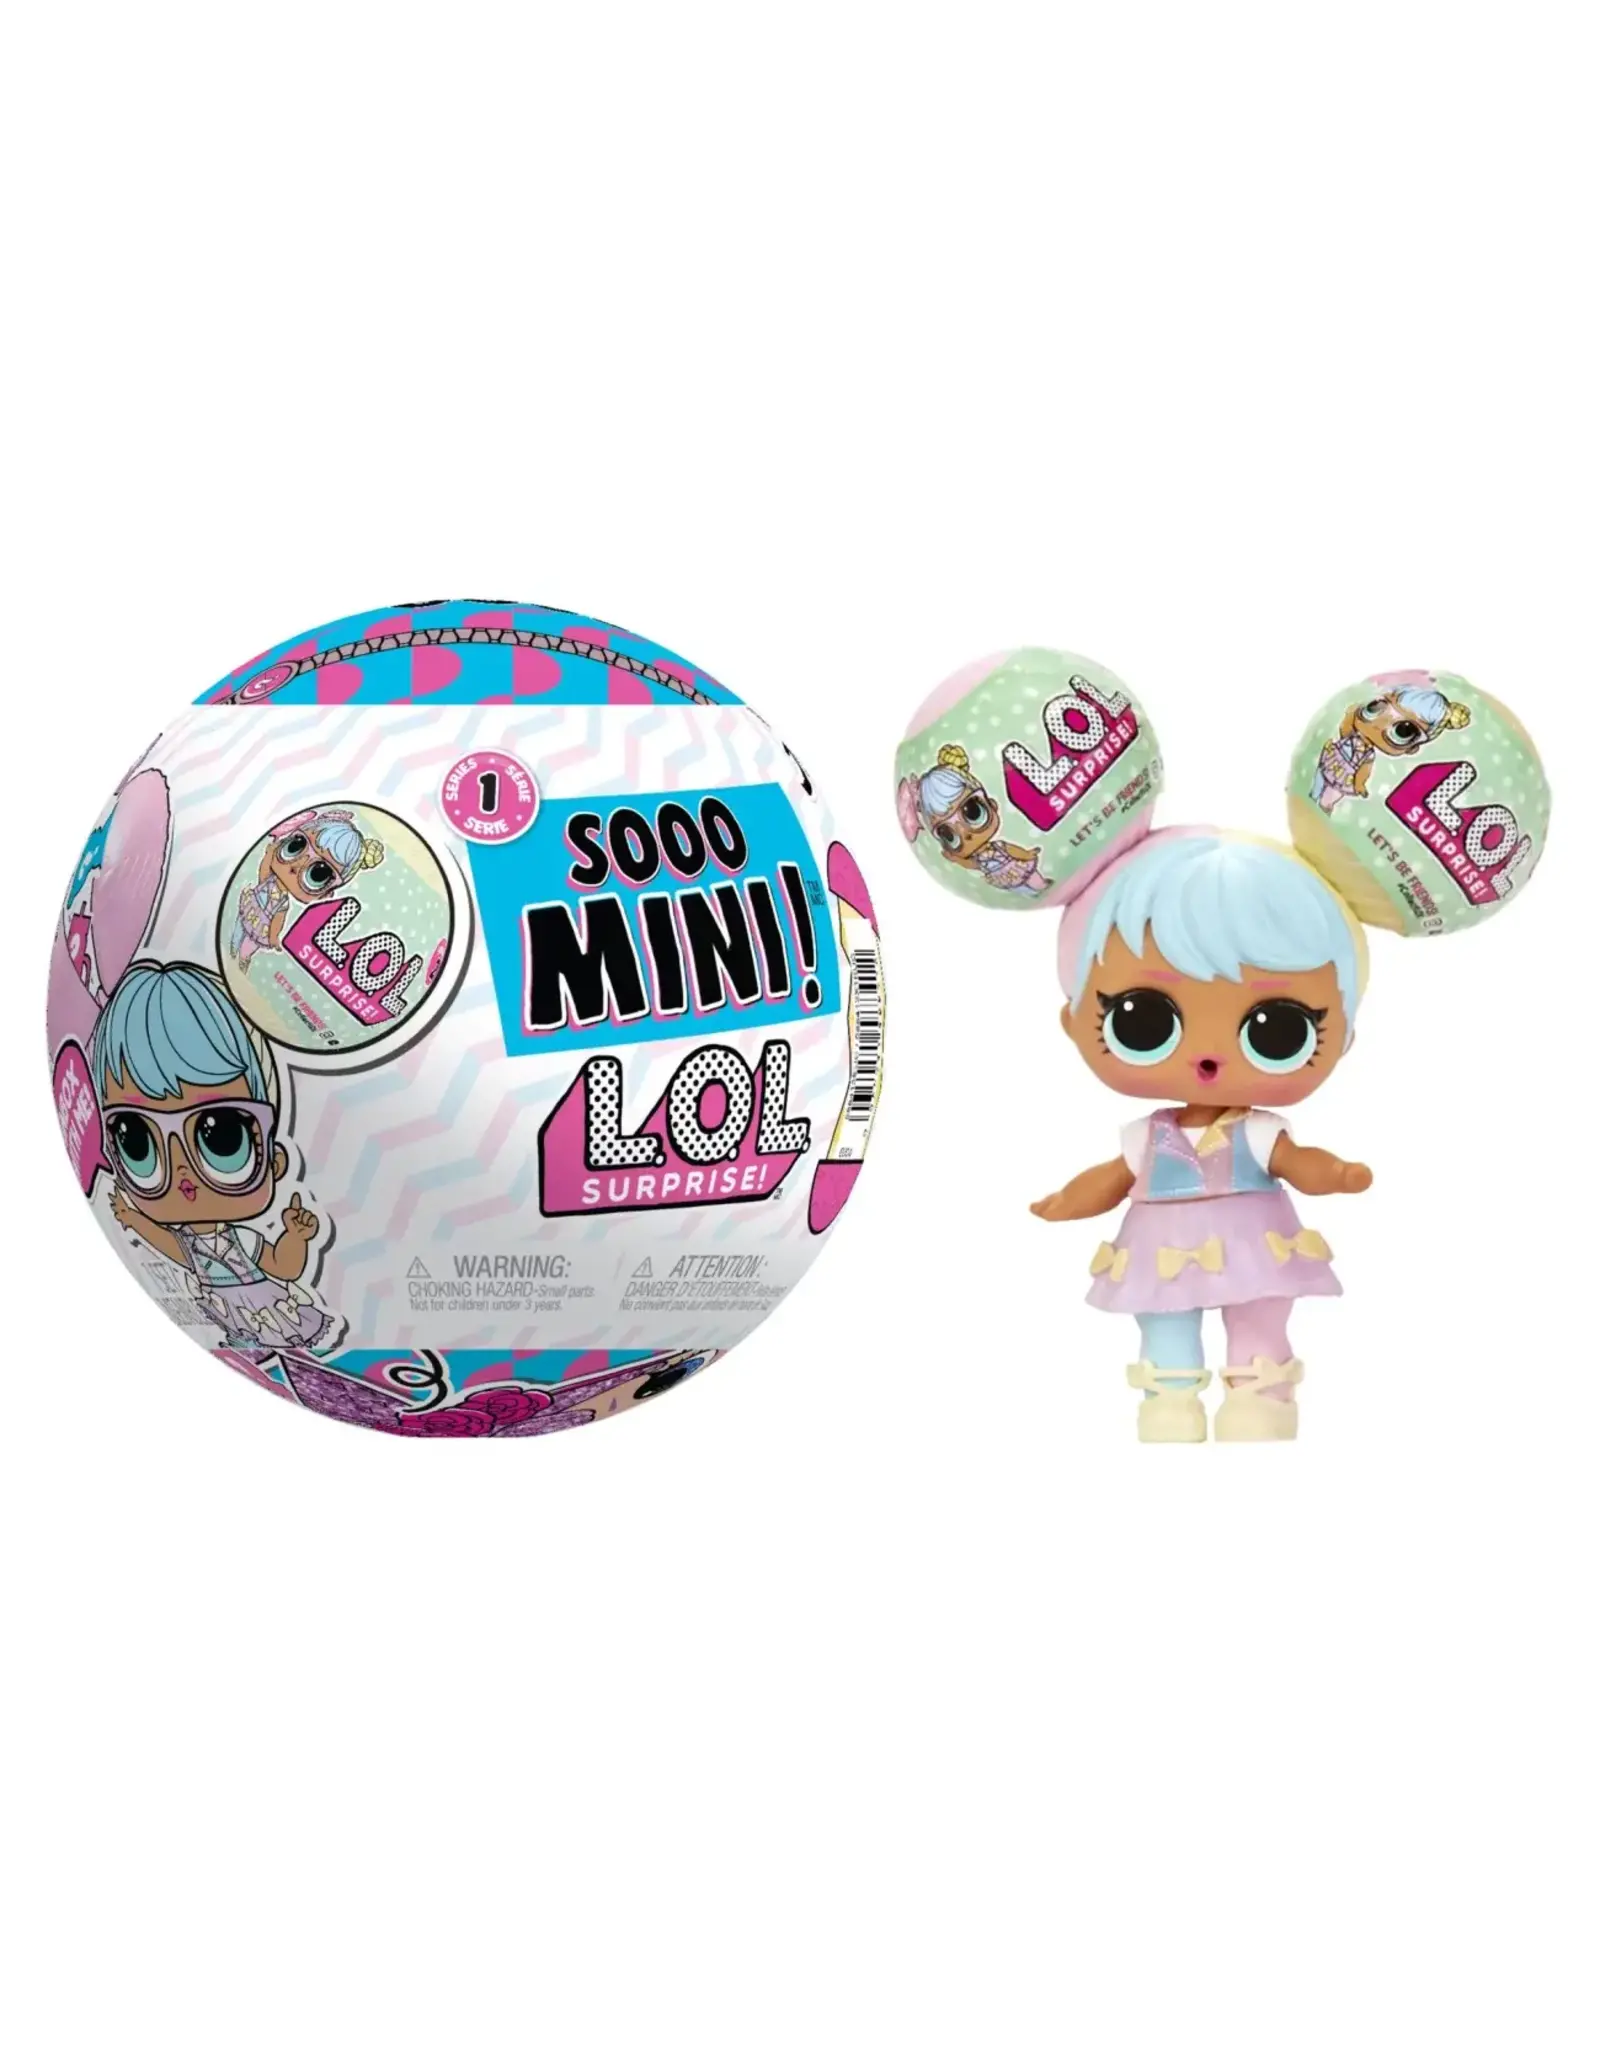 L.O.L. L.O.L. Surprise Sooo Mini! Pop